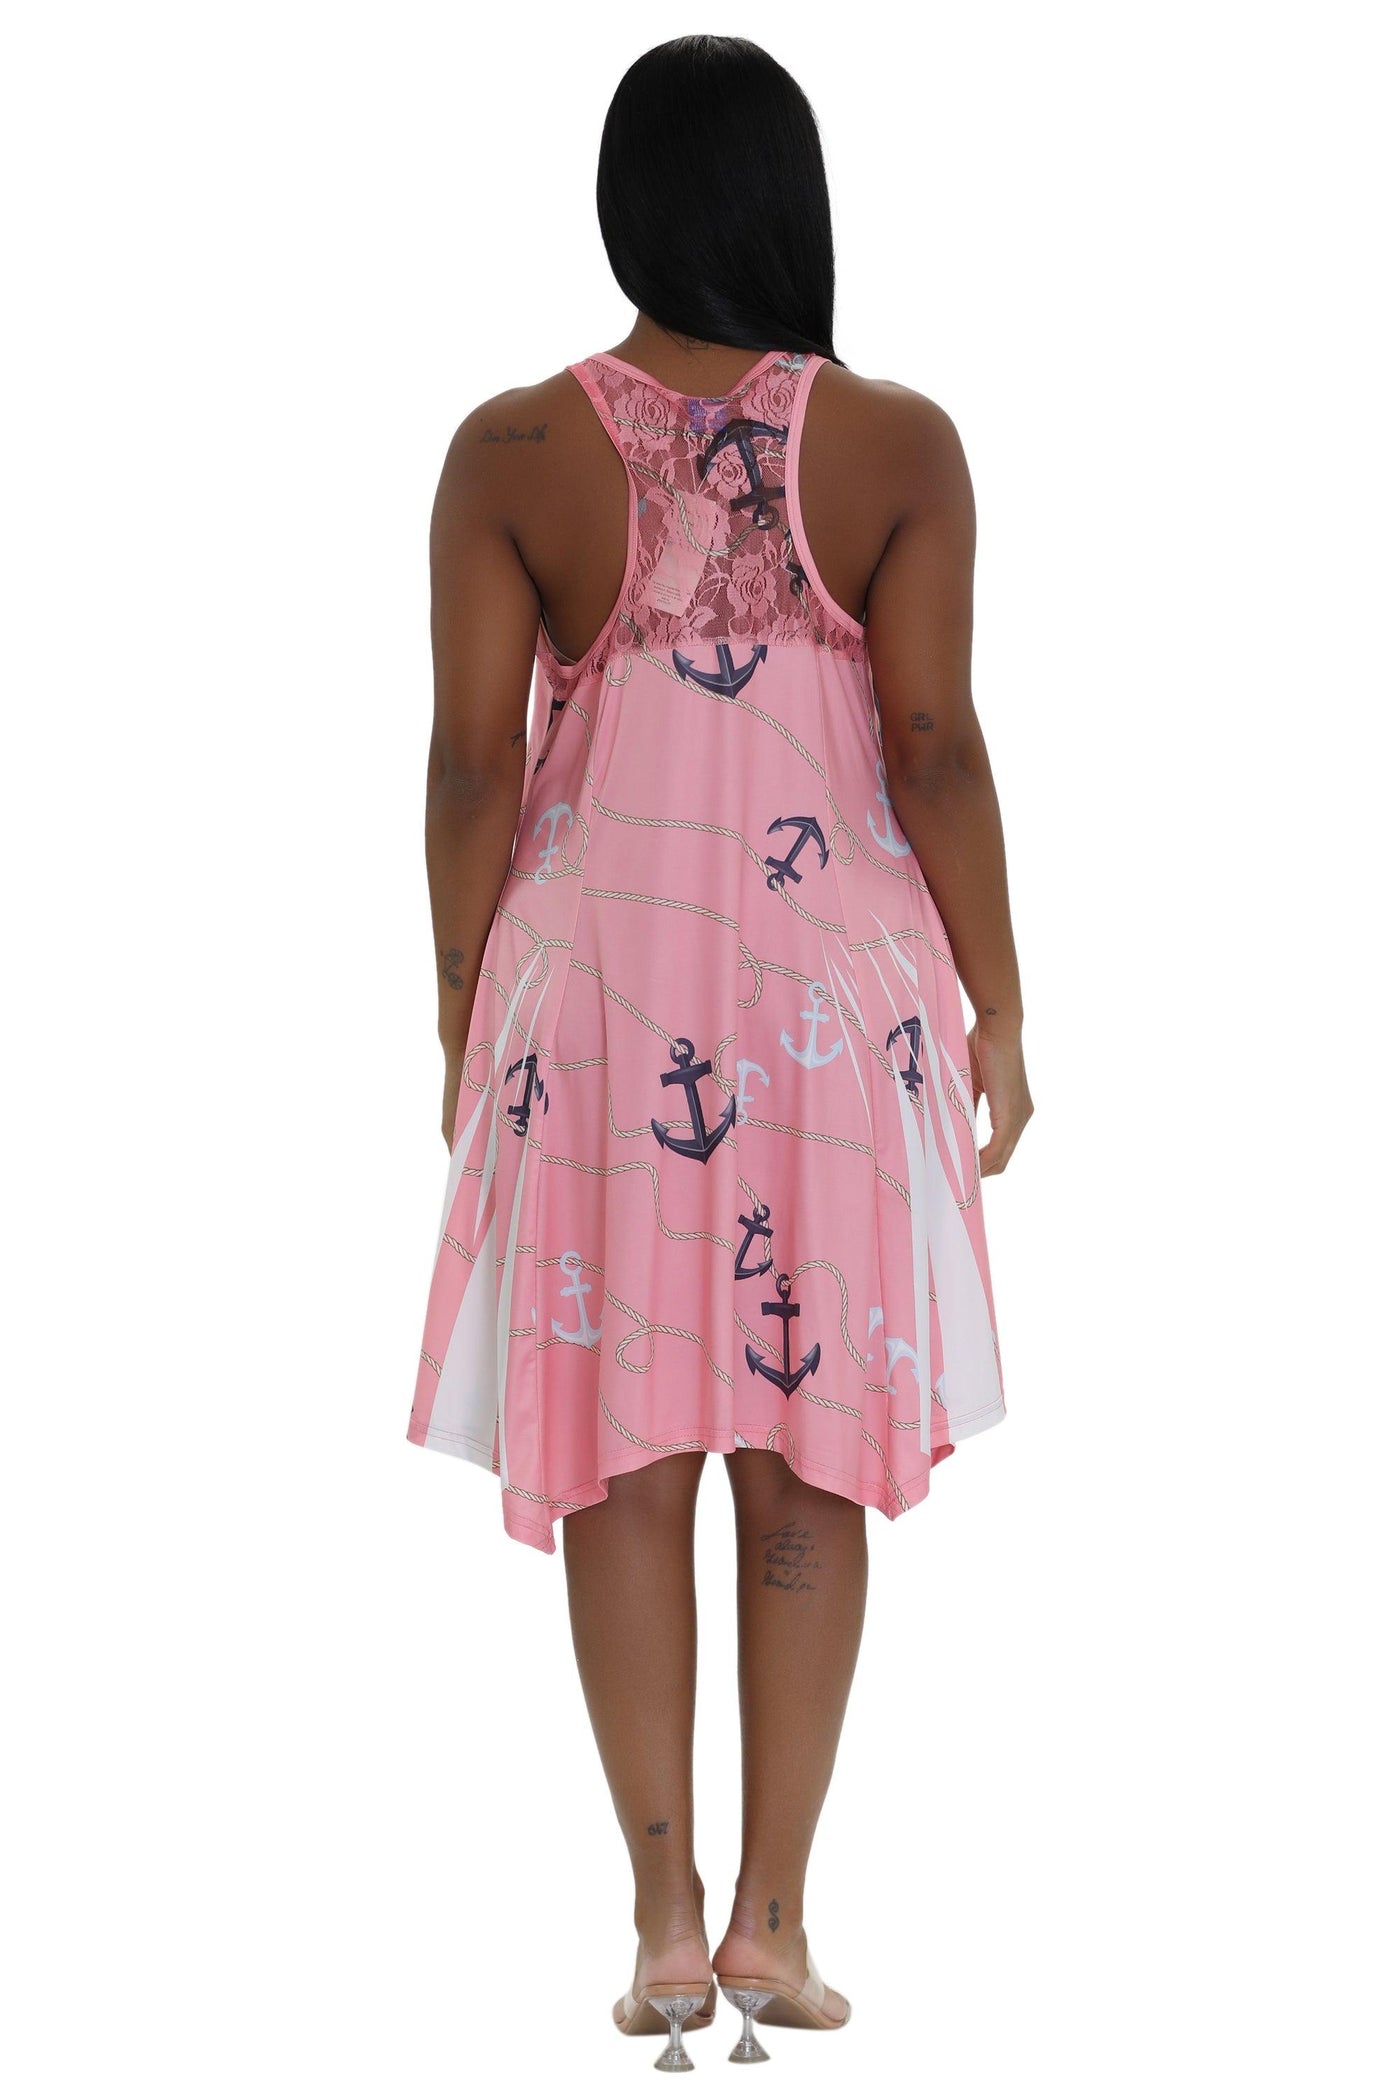 Anchor Print Beach Dress 21236  - Advance Apparels Inc